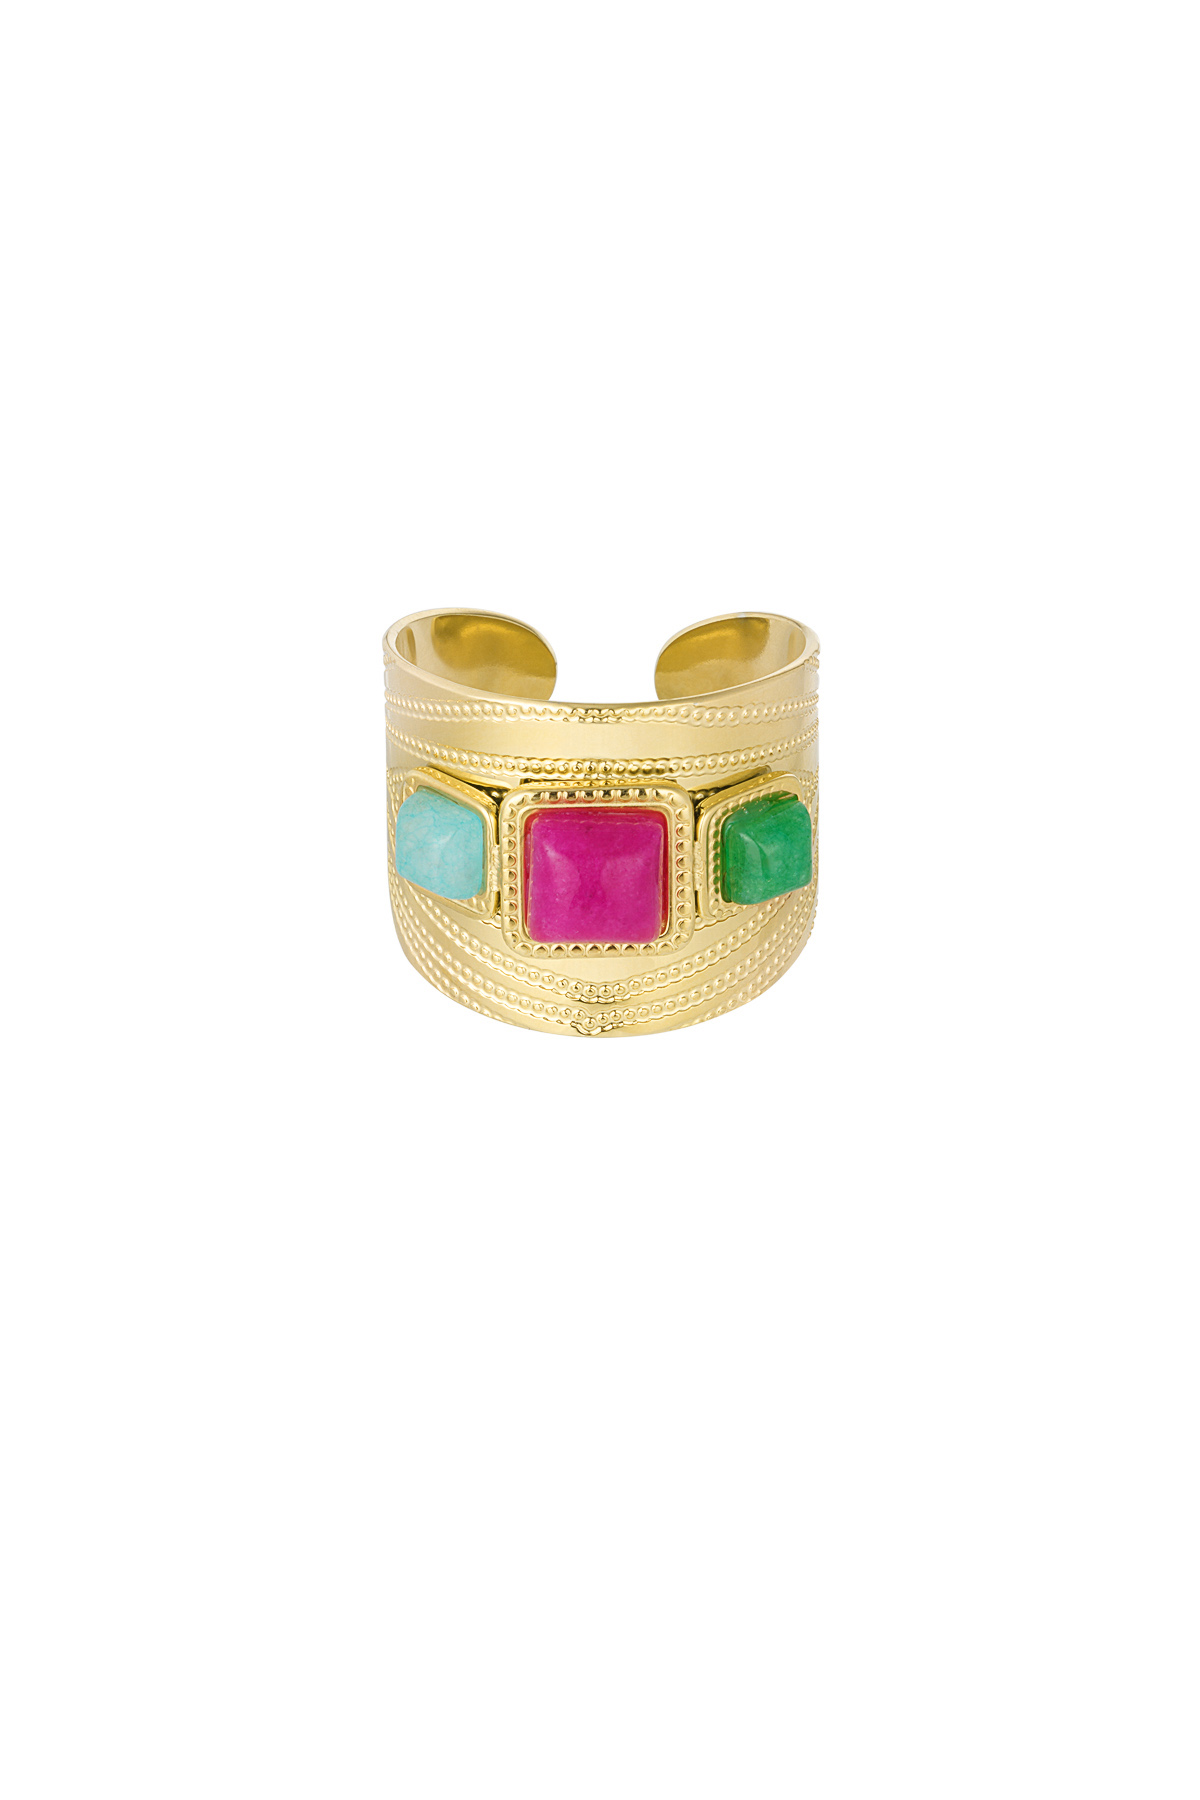 Statement-Ring mit farbigen Steinen – Gold  